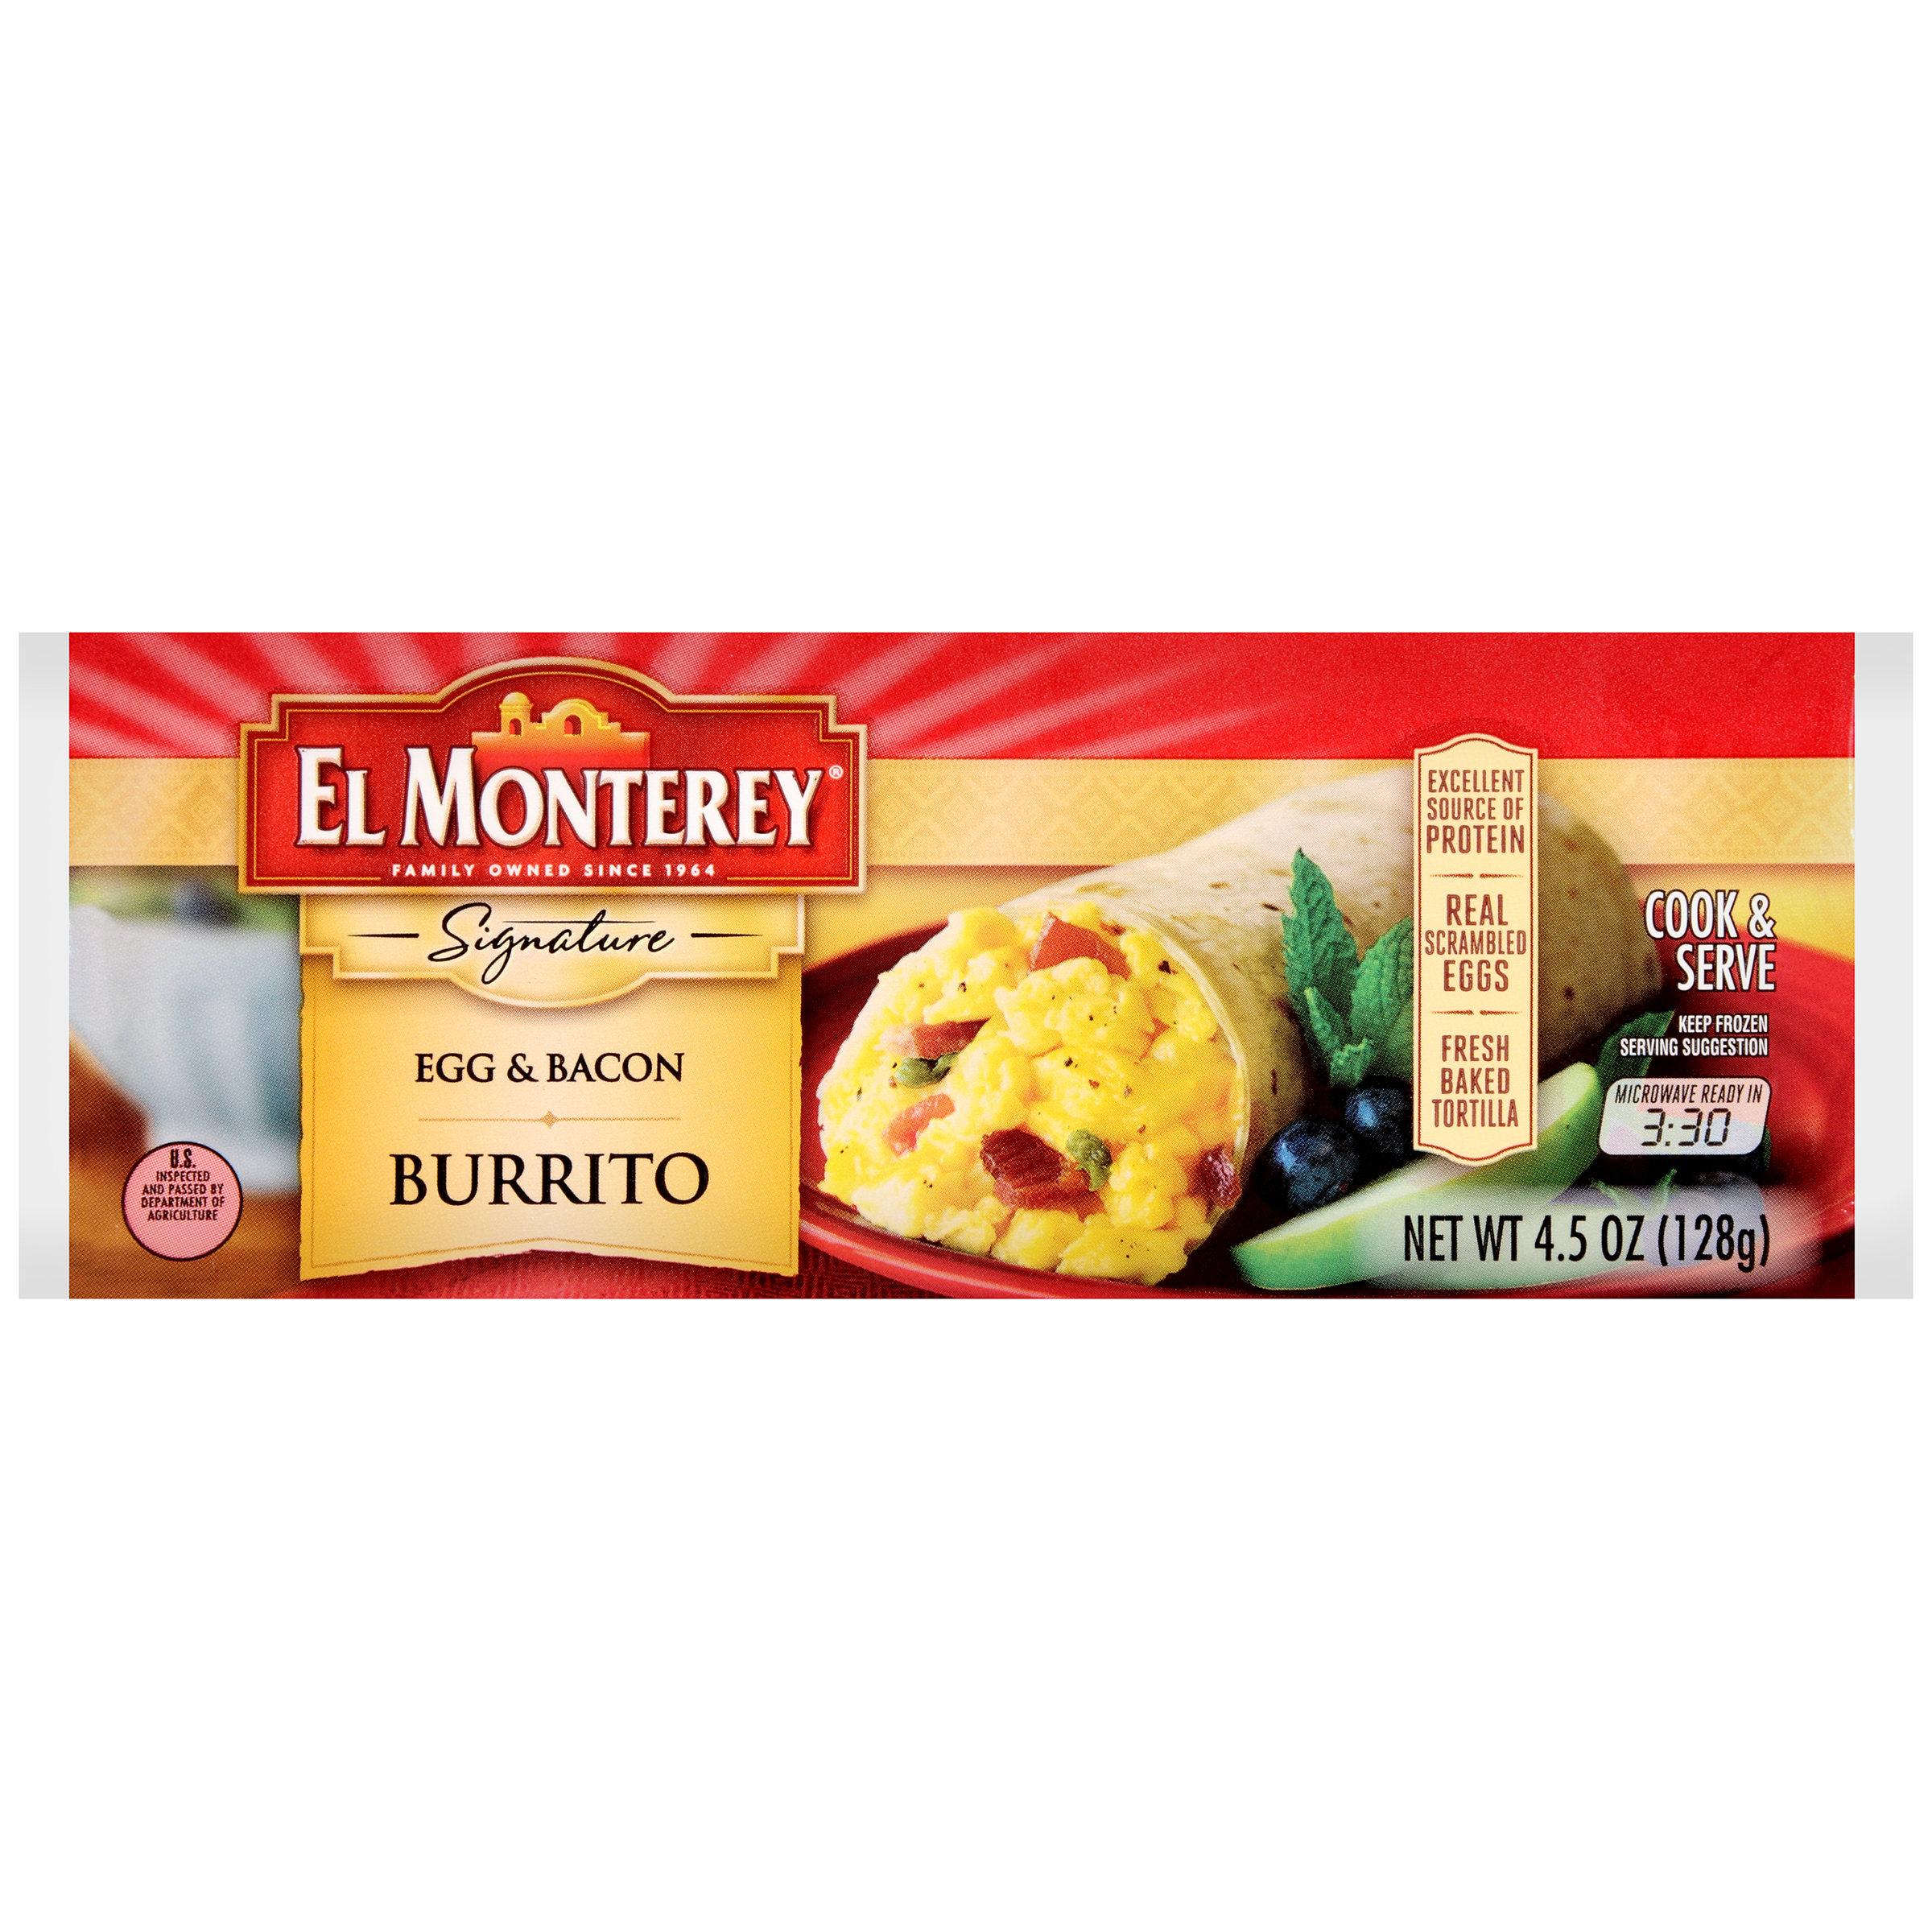 El monterey egg & bacon burrito 4.5oz